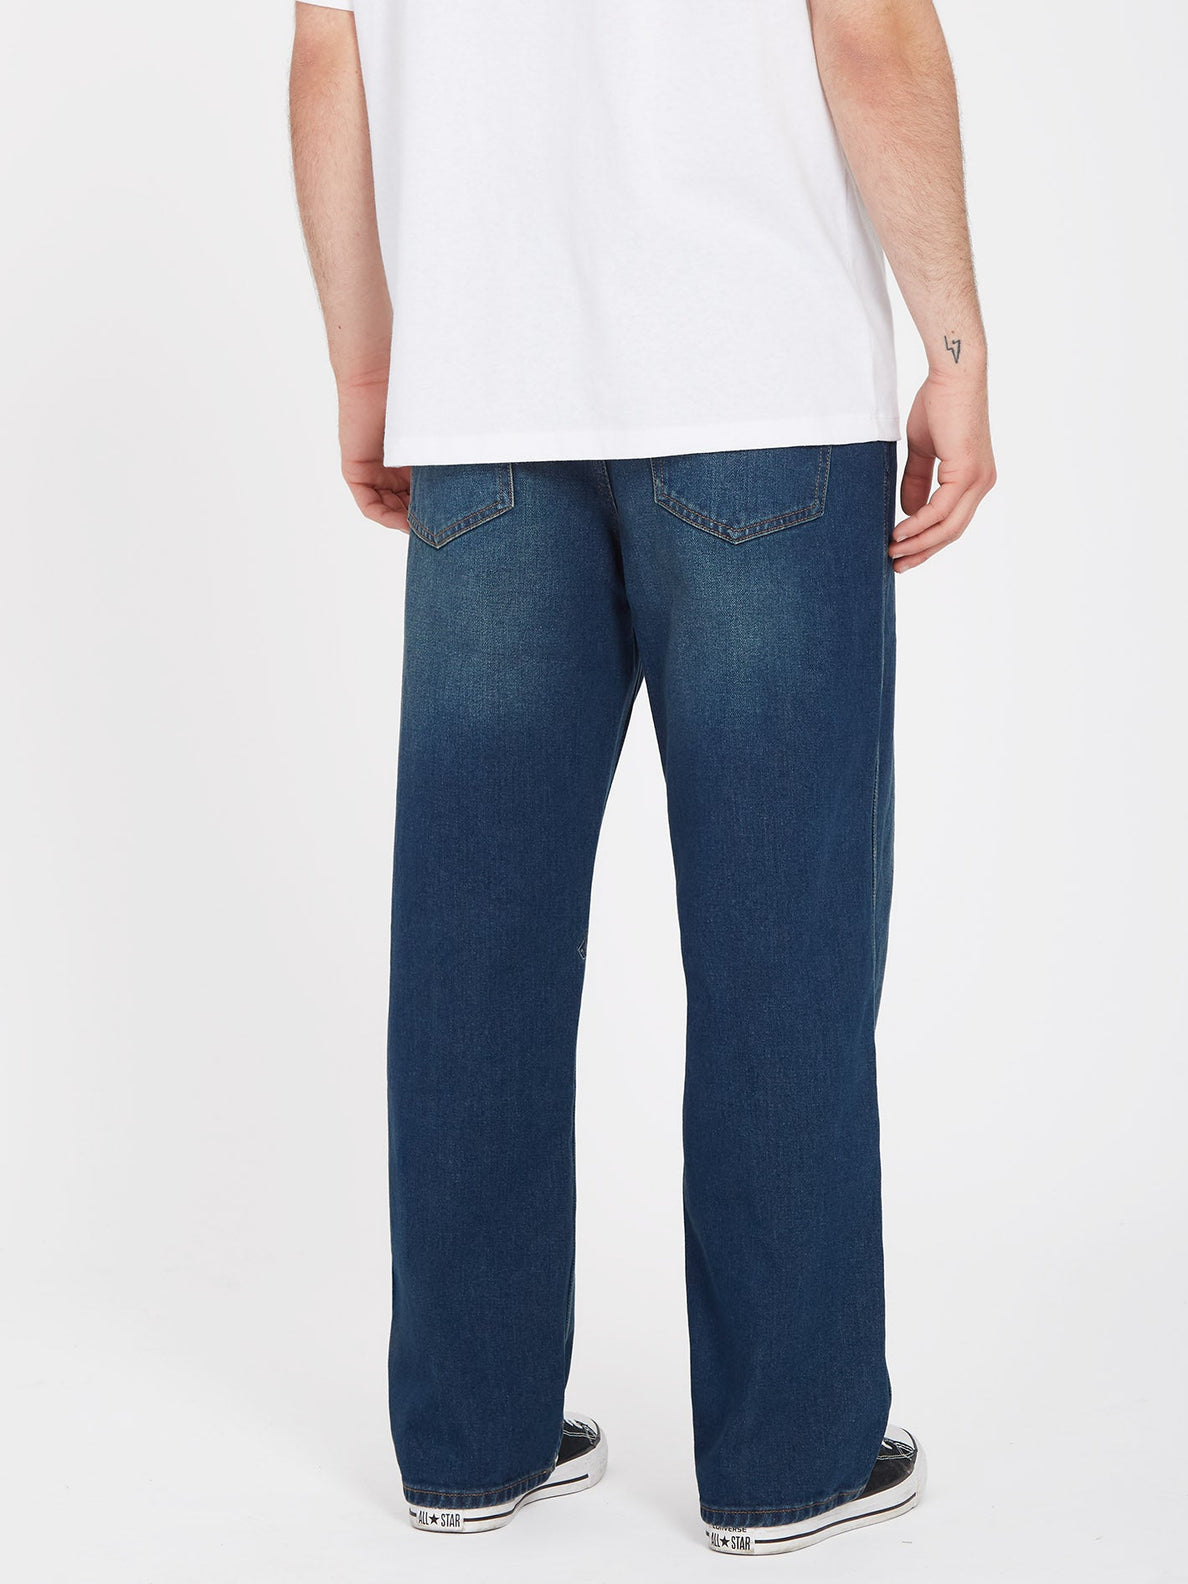 Nailer Jeans - MATURED BLUE (A1912304_MBL) [B]